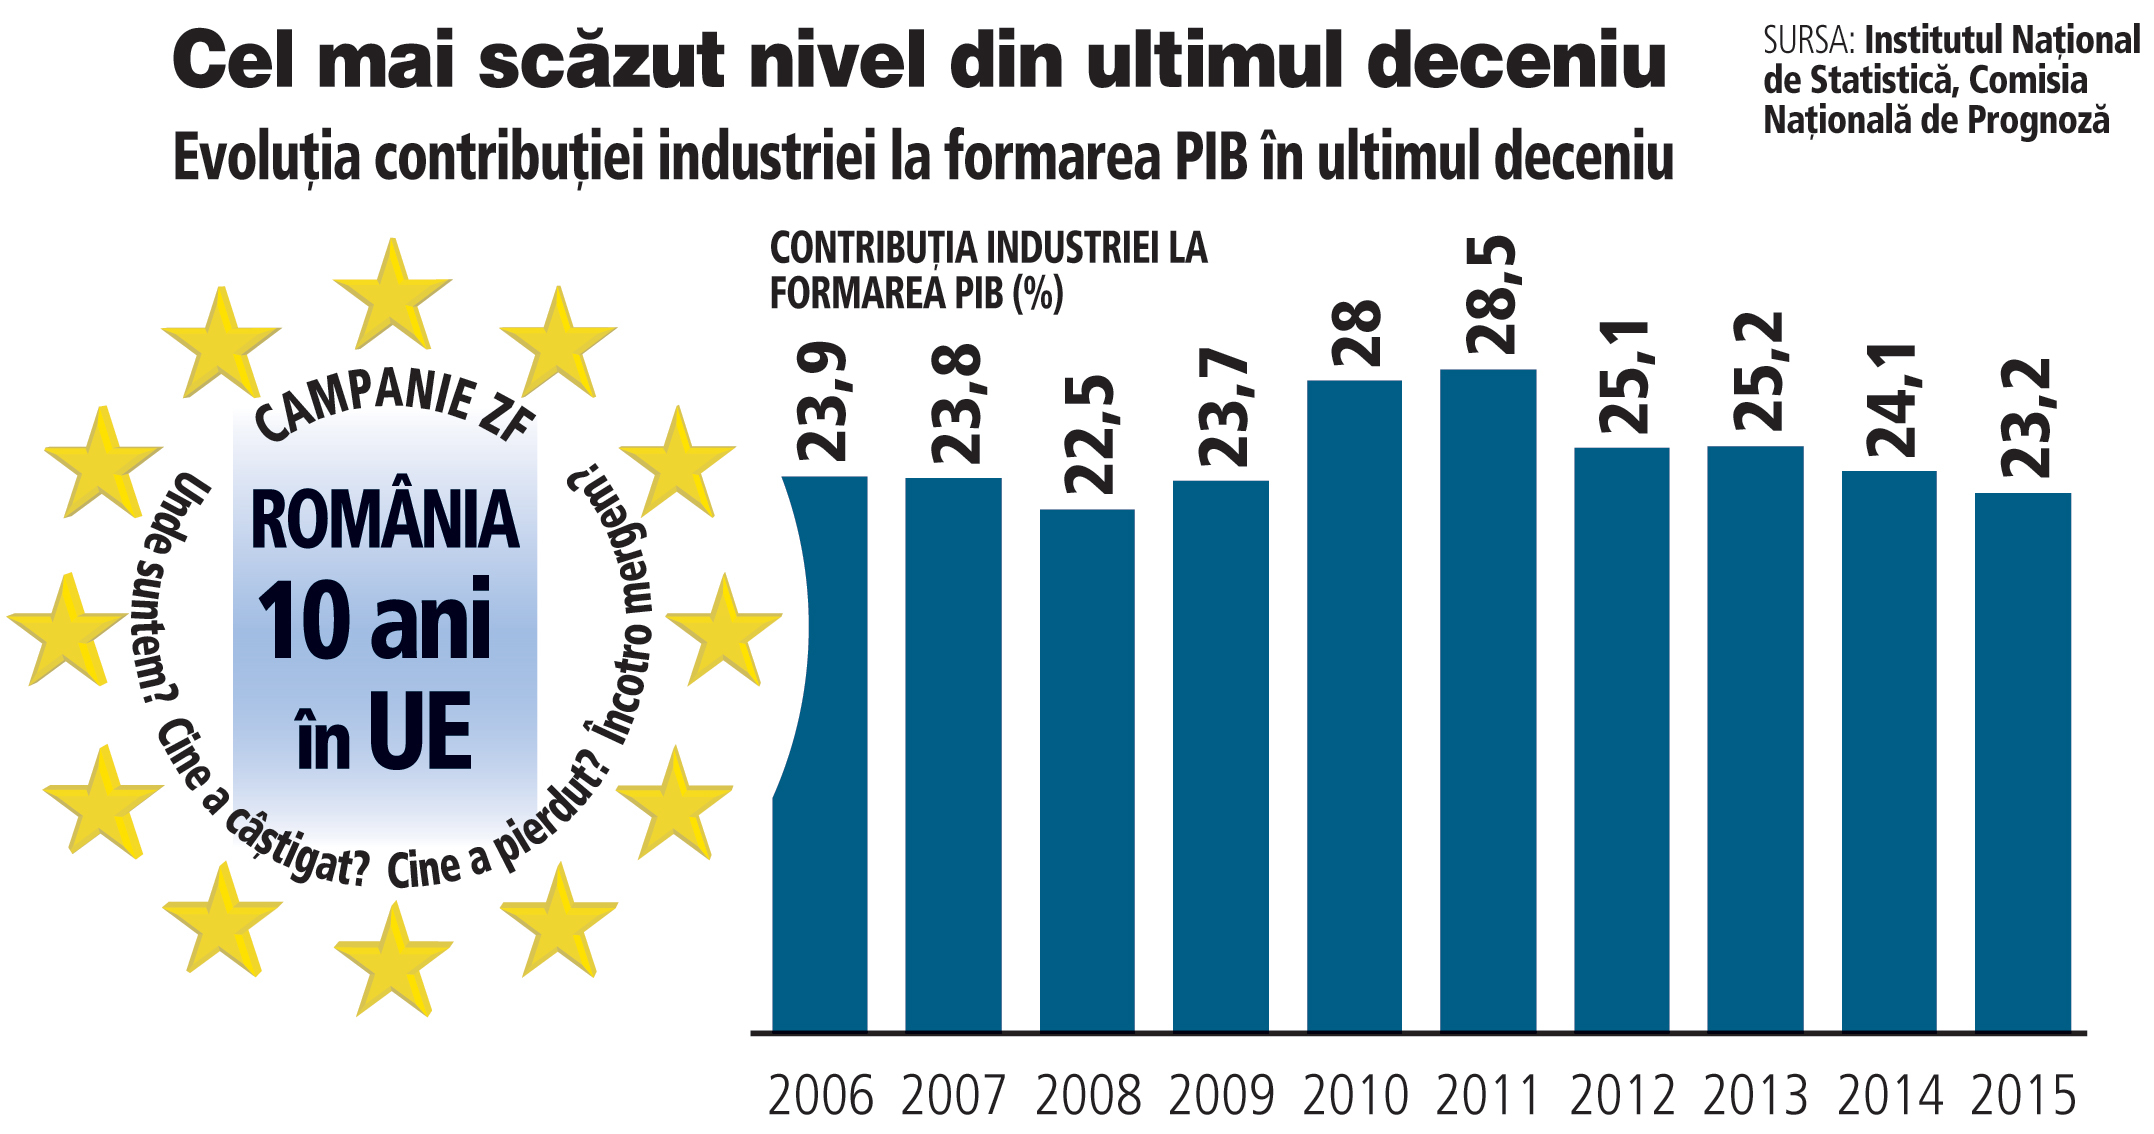 ZF 10 ani de la aderarea la UE. Contribuţia industriei la formarea PIB a ajuns la 23%, cel mai scăzut nivel din ultimii şapte ani şi la jumătate faţă de anul 1989